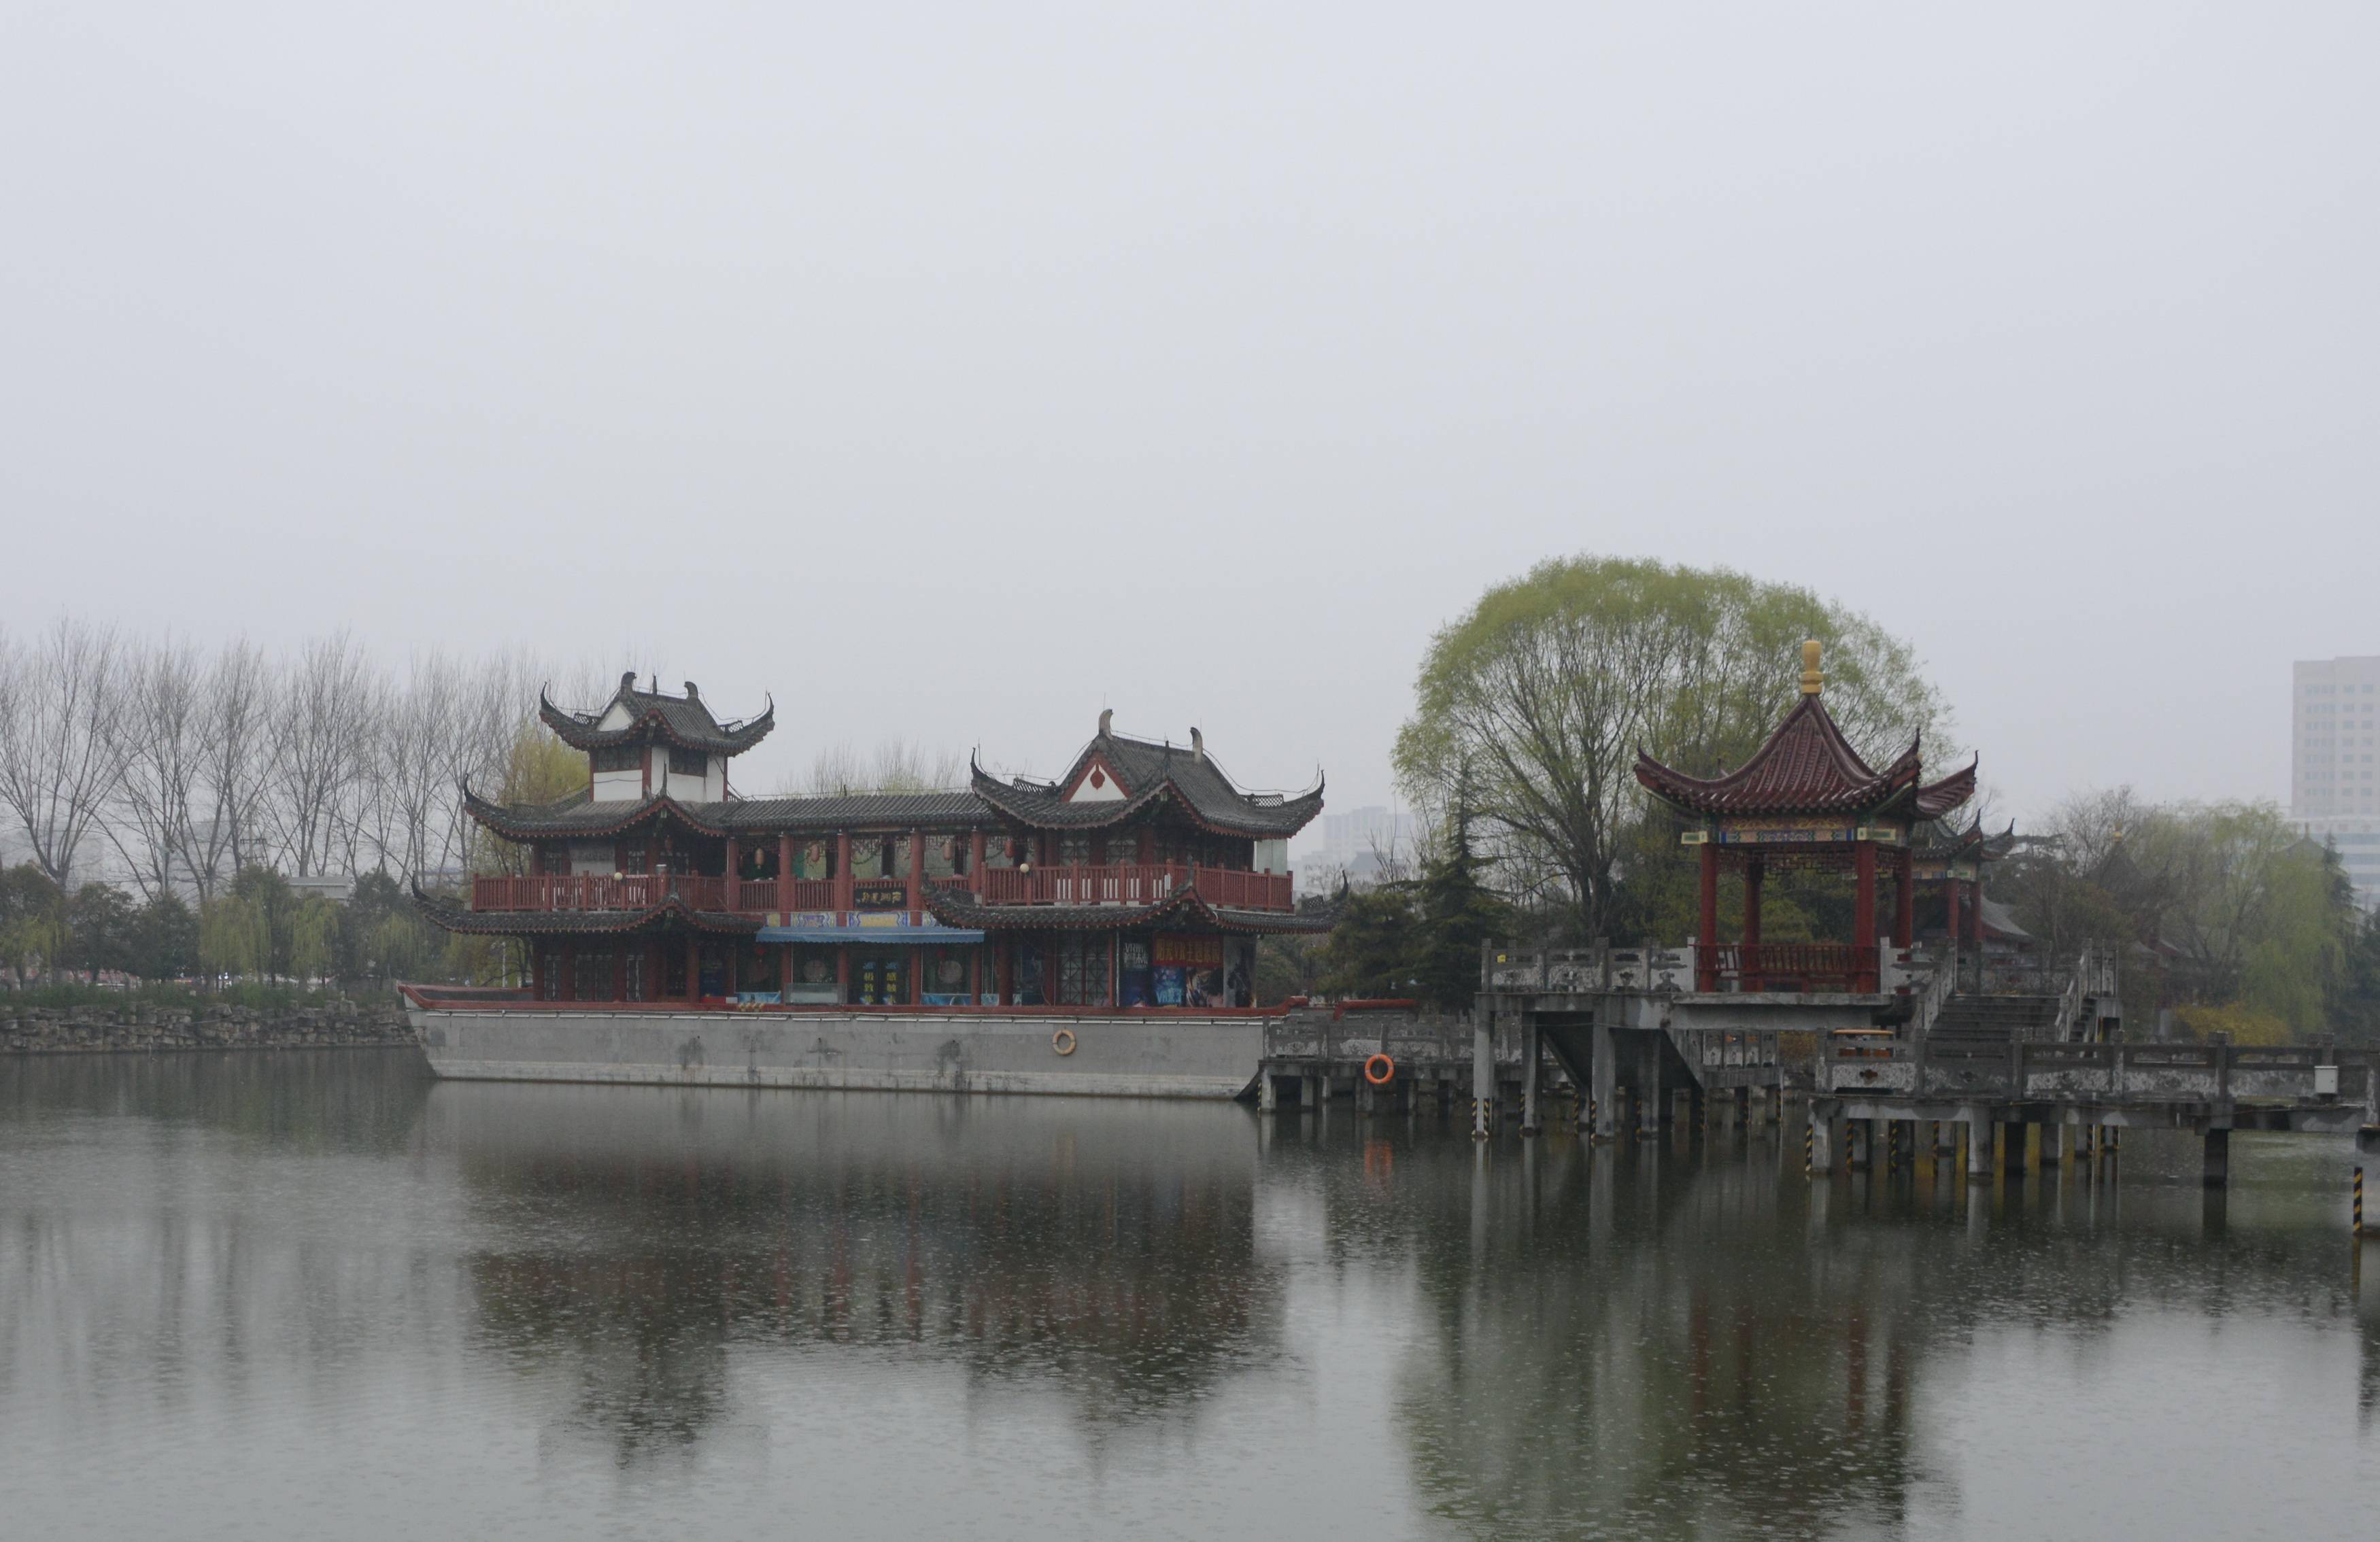 许昌西湖公园的美景图片